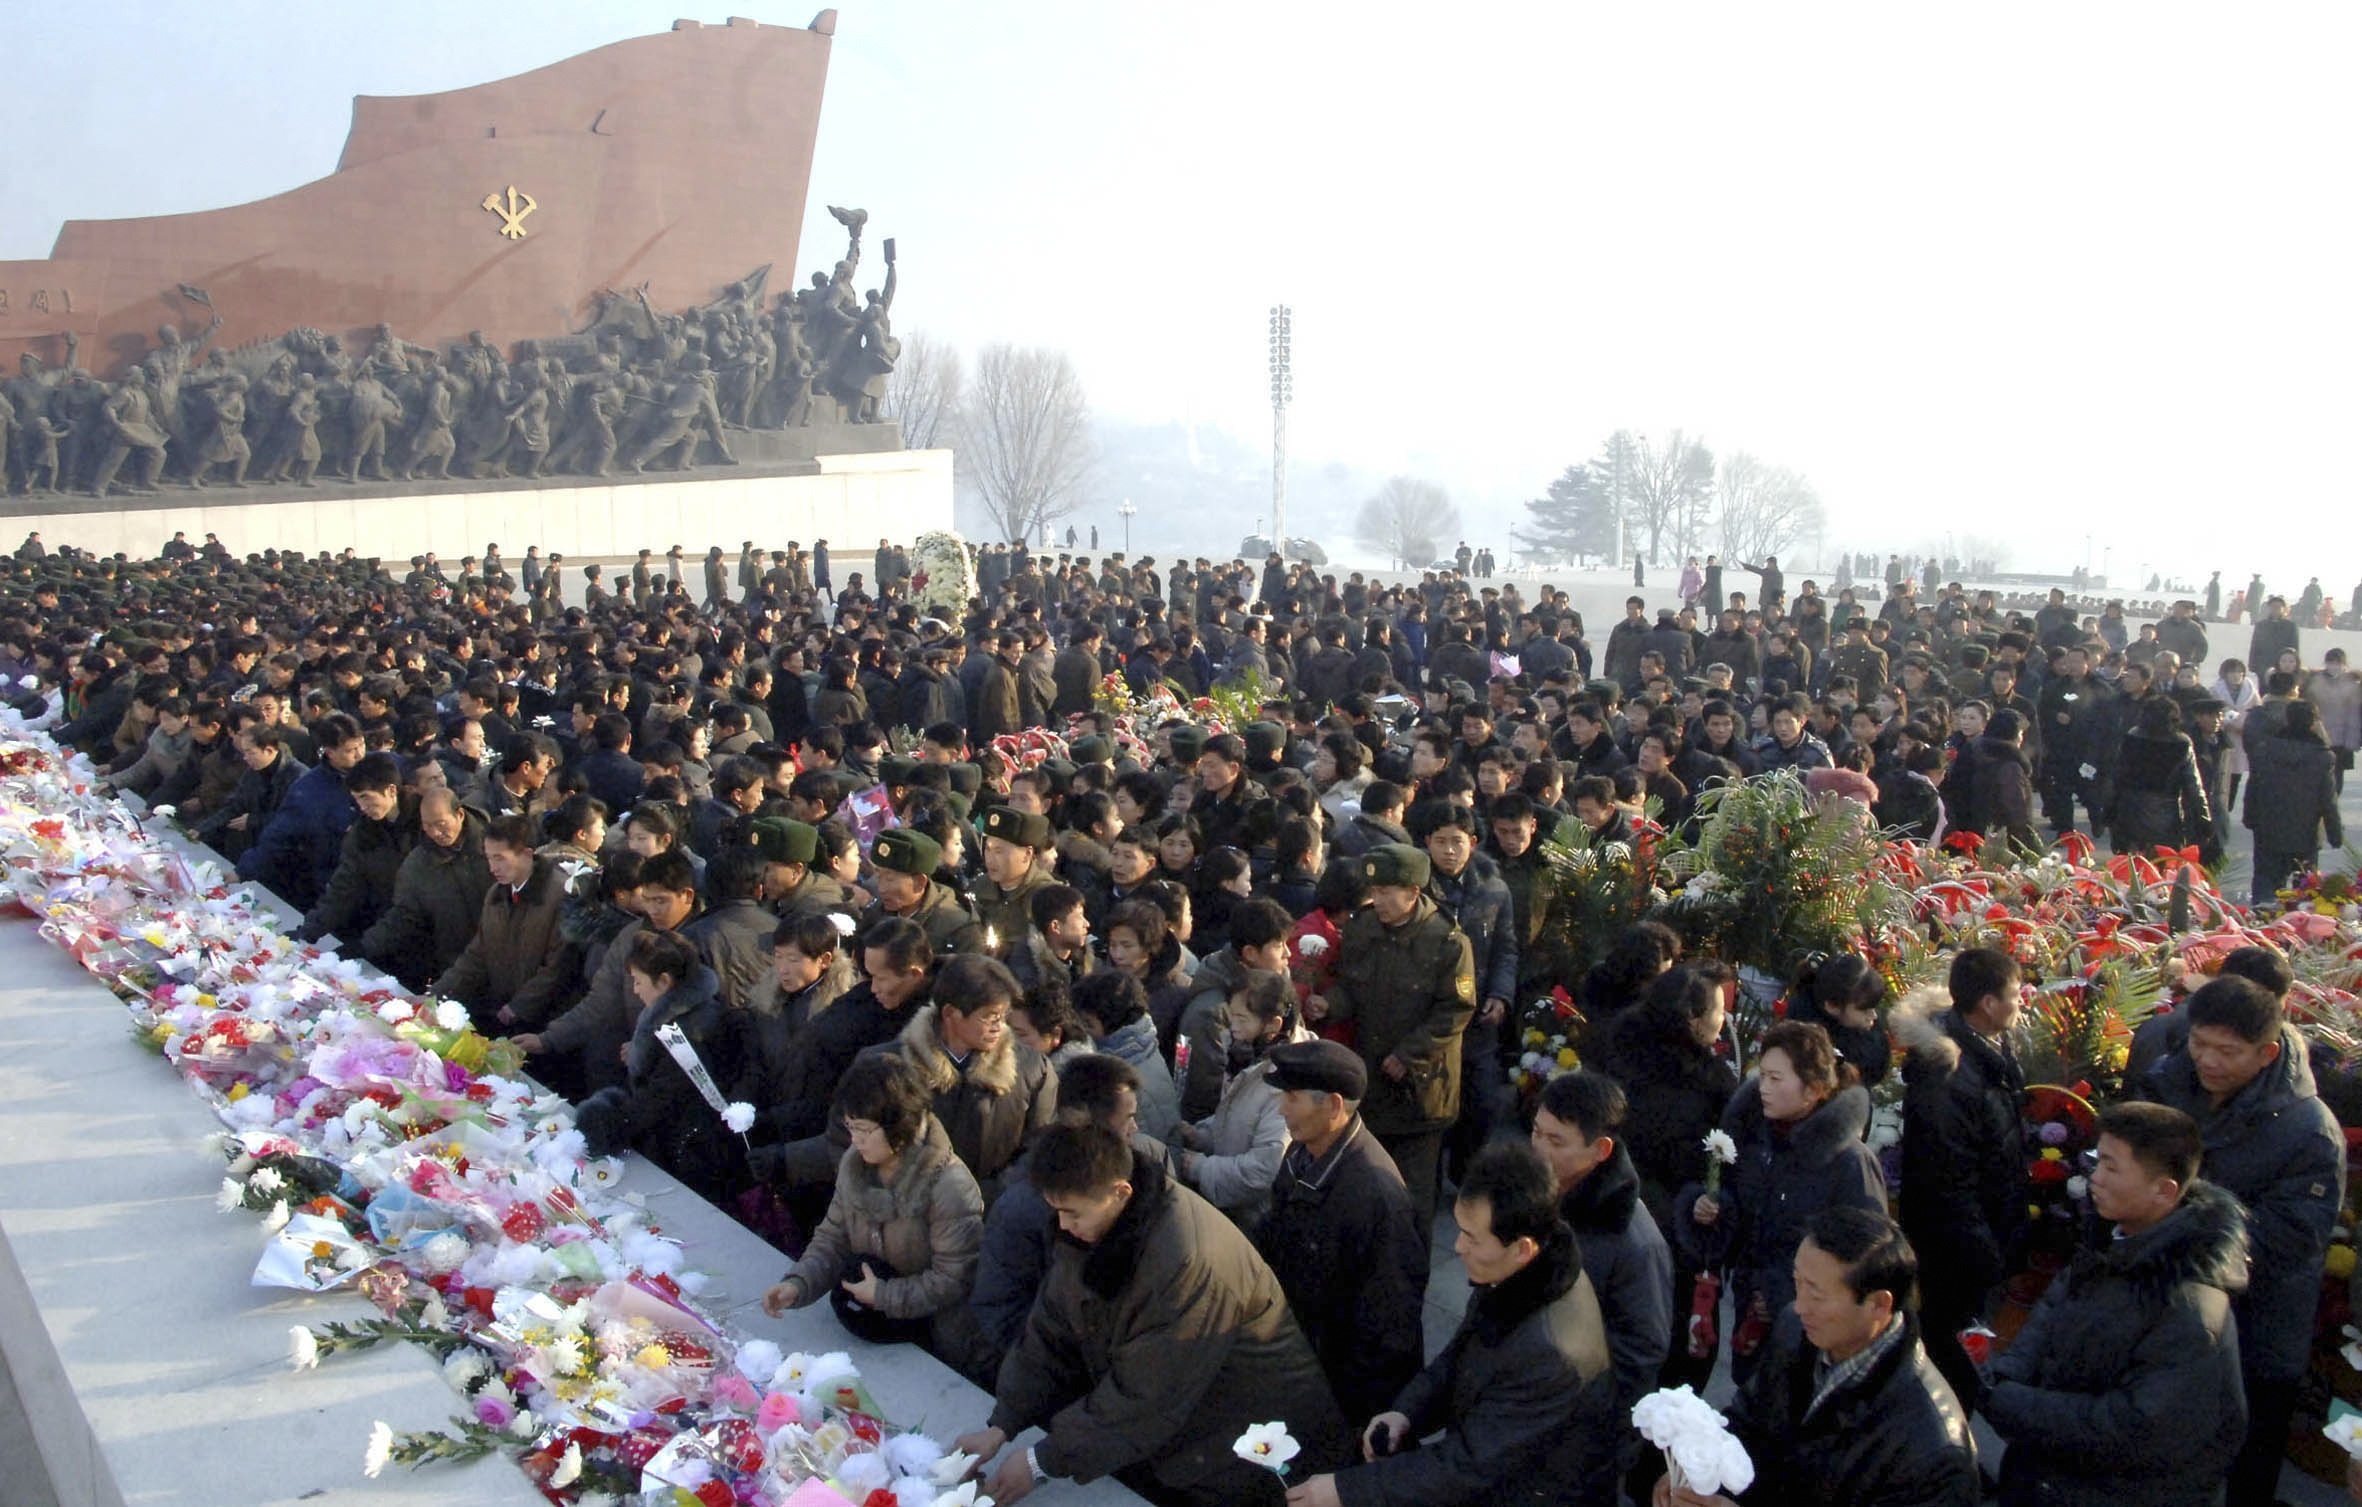 Βόρεια Κορέα: Από την εκτέλεση στην… παρέλαση για την επέτειο θανάτου του Κιμ Γιονγκ Ιλ (ΦΩΤΟ, VIDEO)